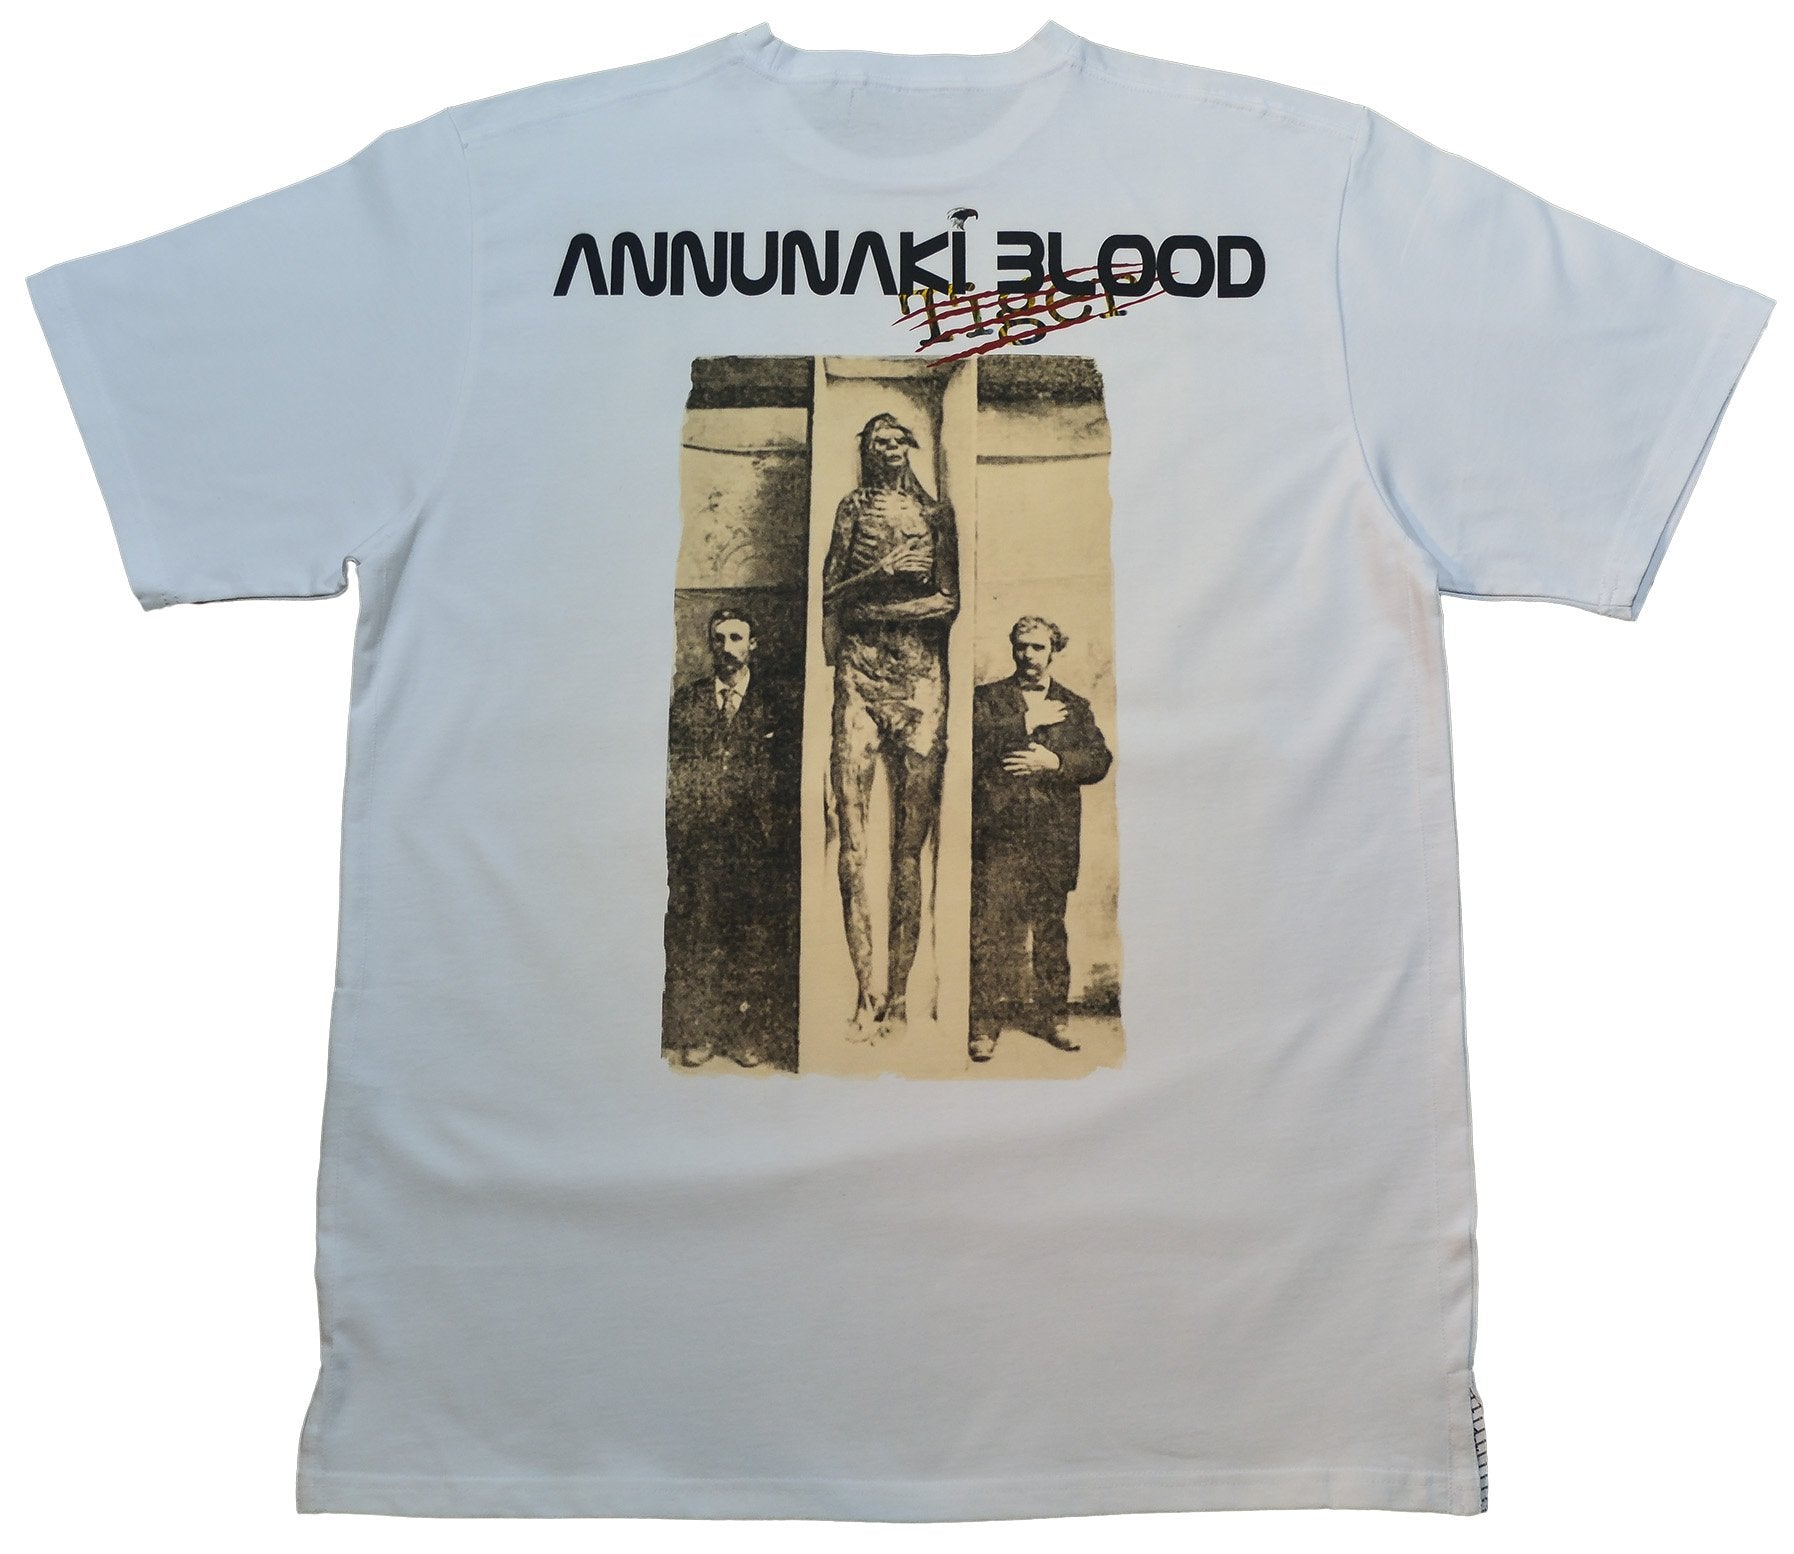 DarqMatterDesign CutnSew T-Shirts Small / White Annunaki Blood